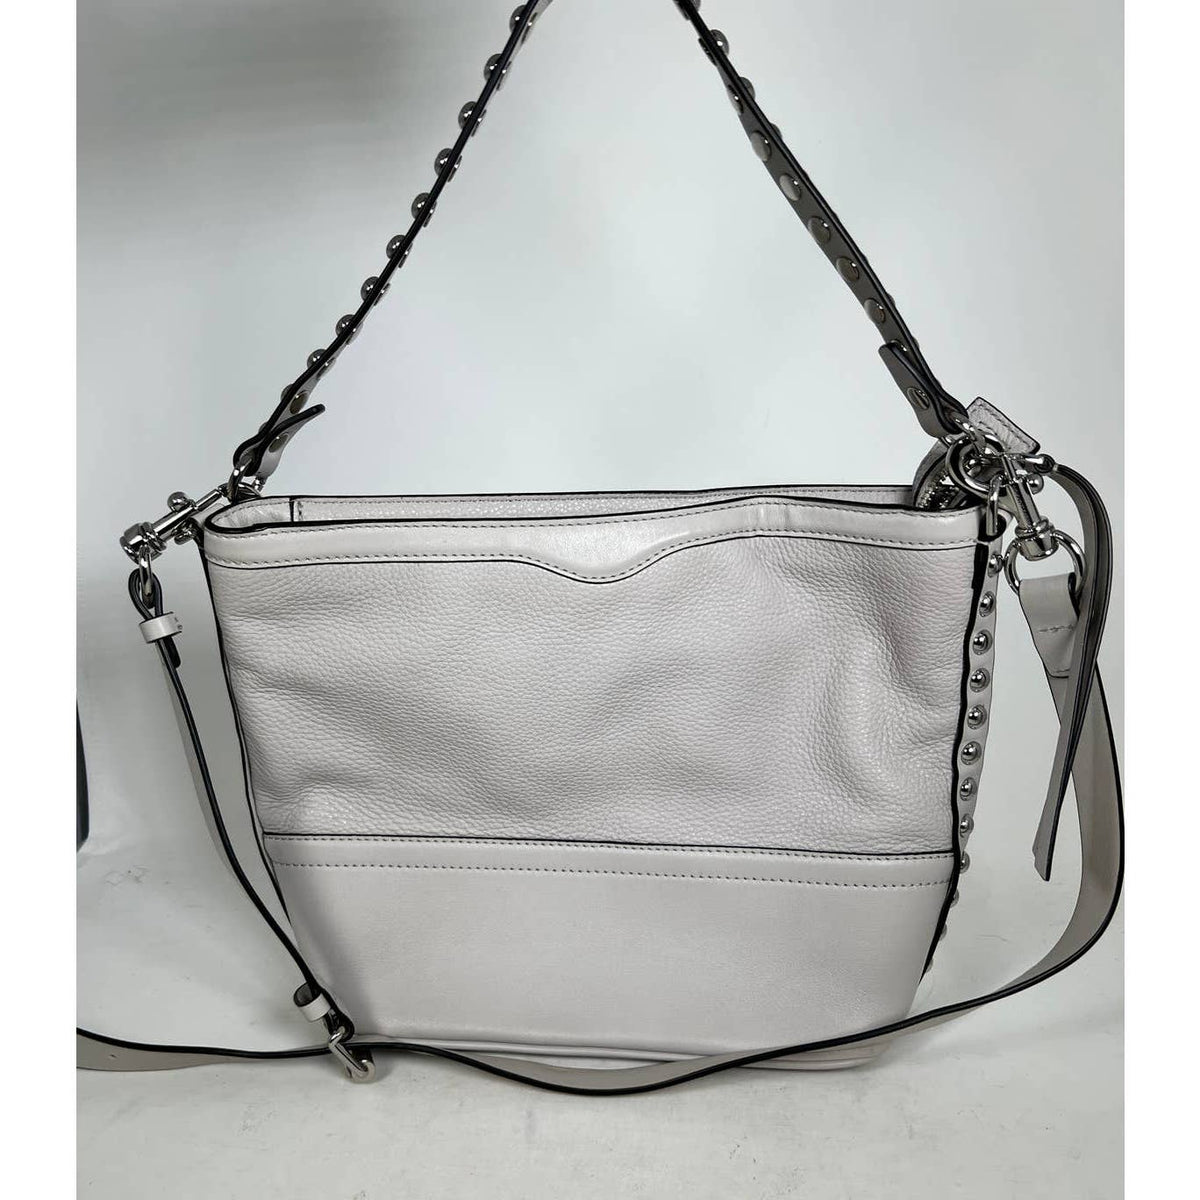 Rebecca Minkoff Blythe Studded Textured Leather Shoulder Bag Grey